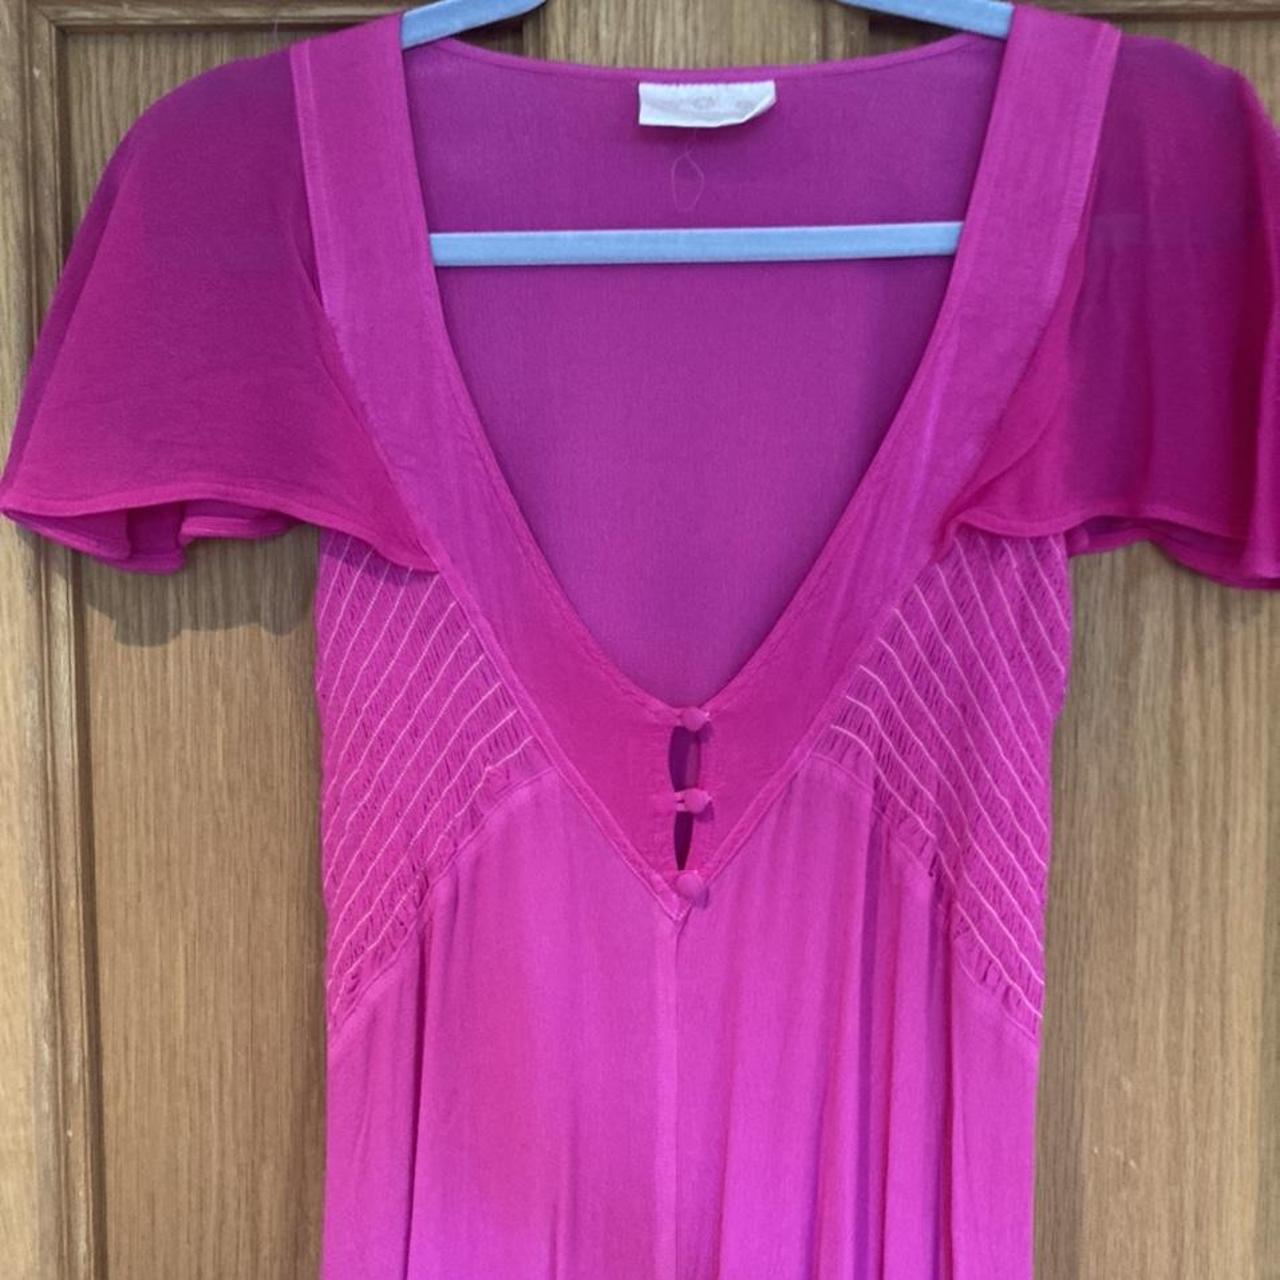 Stunning fuchsia pink maxi dress from boutique... - Depop